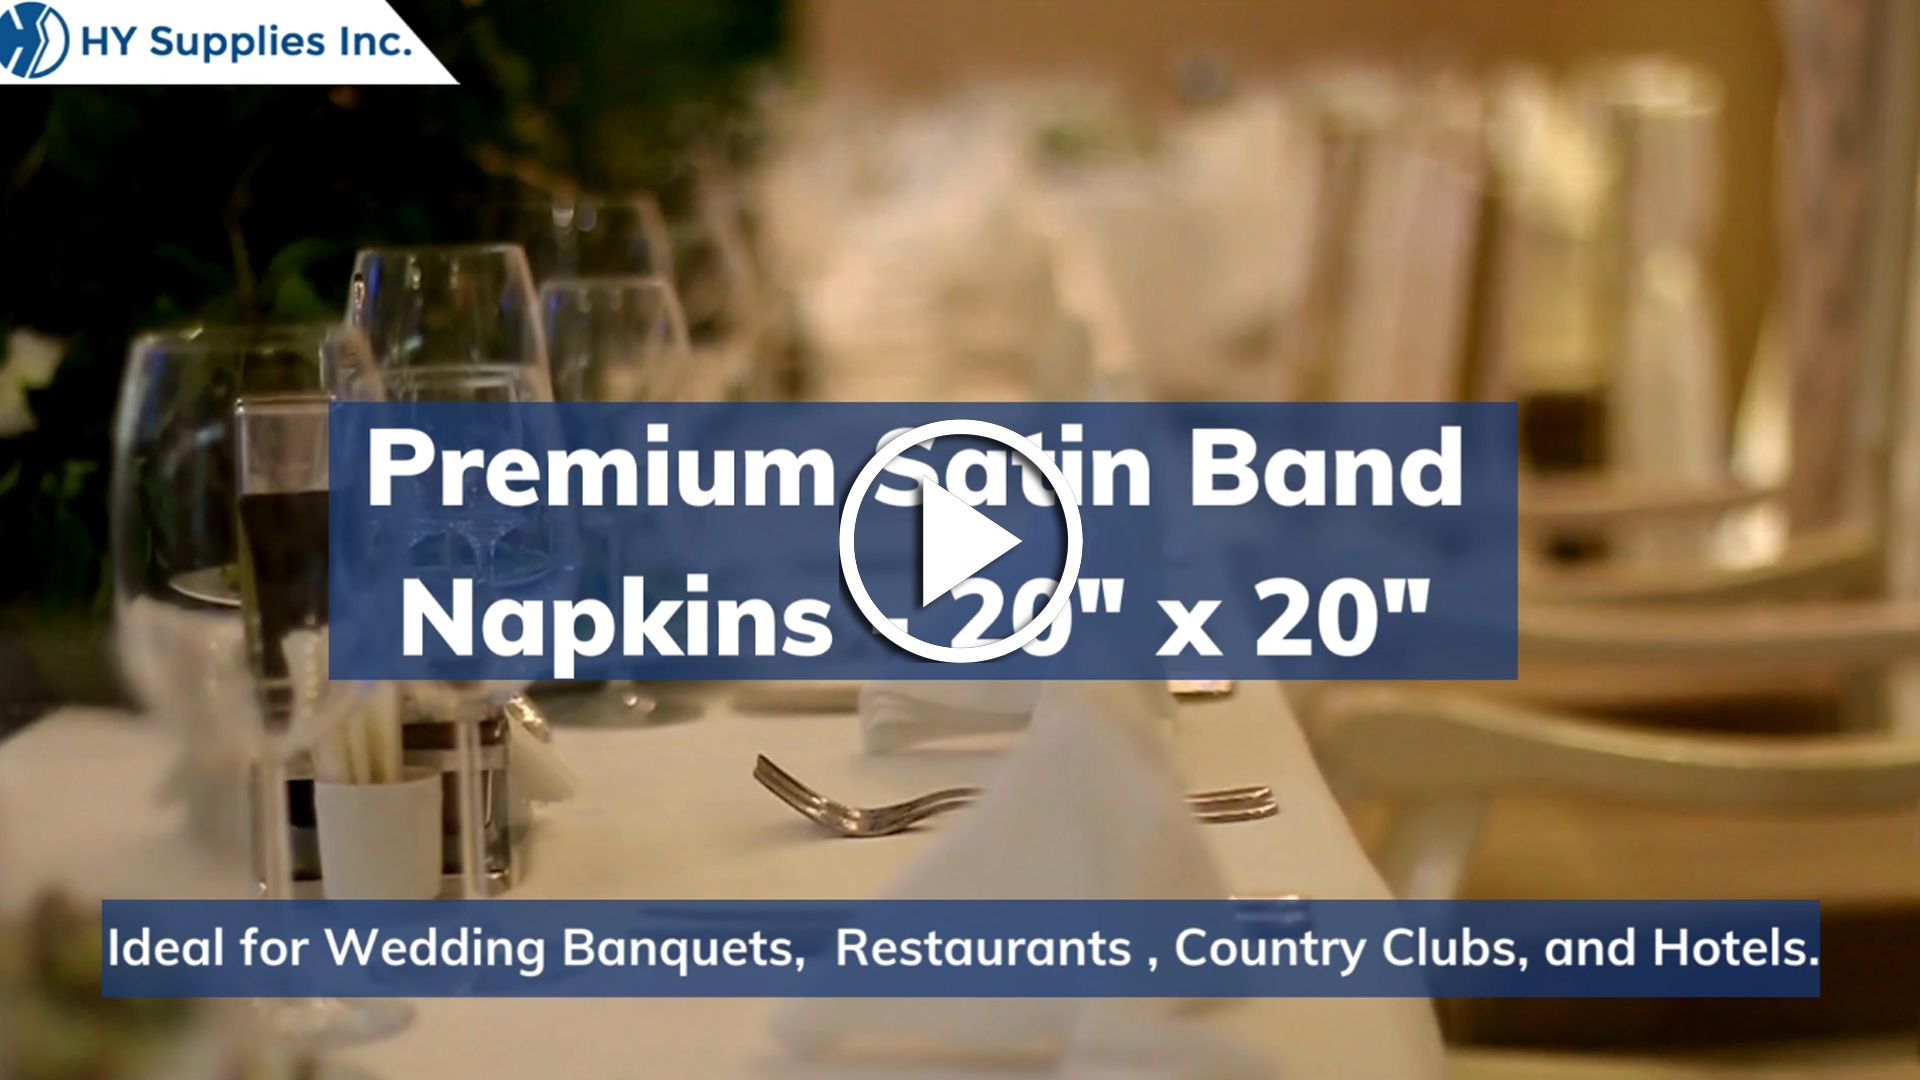 Premium Satin Band Napkins - 20" x 20"